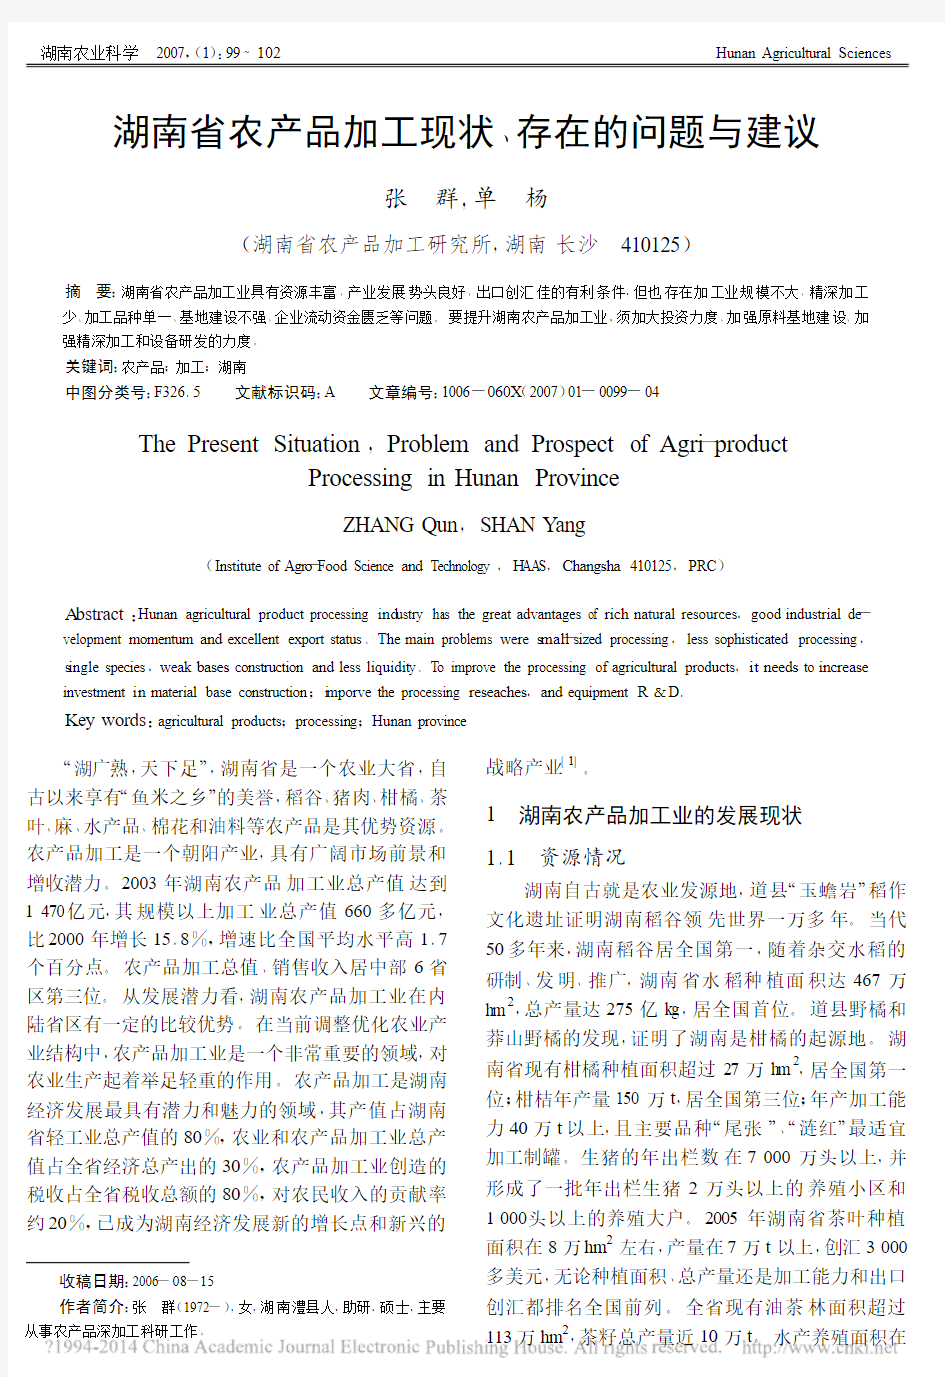 湖南省农产品加工现状_存在的问题与建议_张群